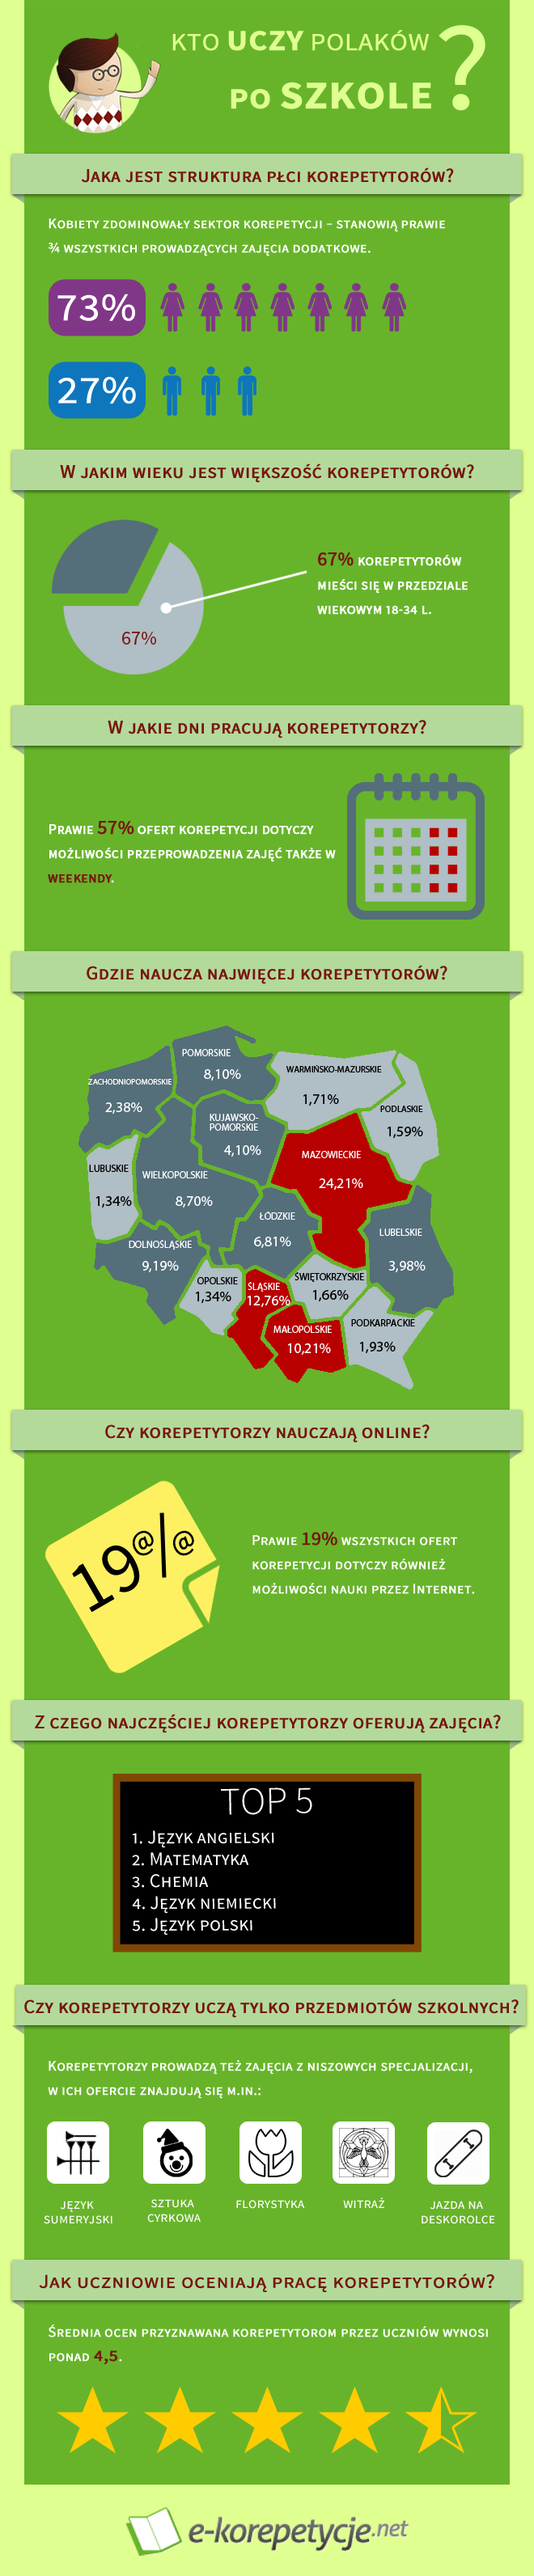 Infografika Kto uczy Polaków po szkole